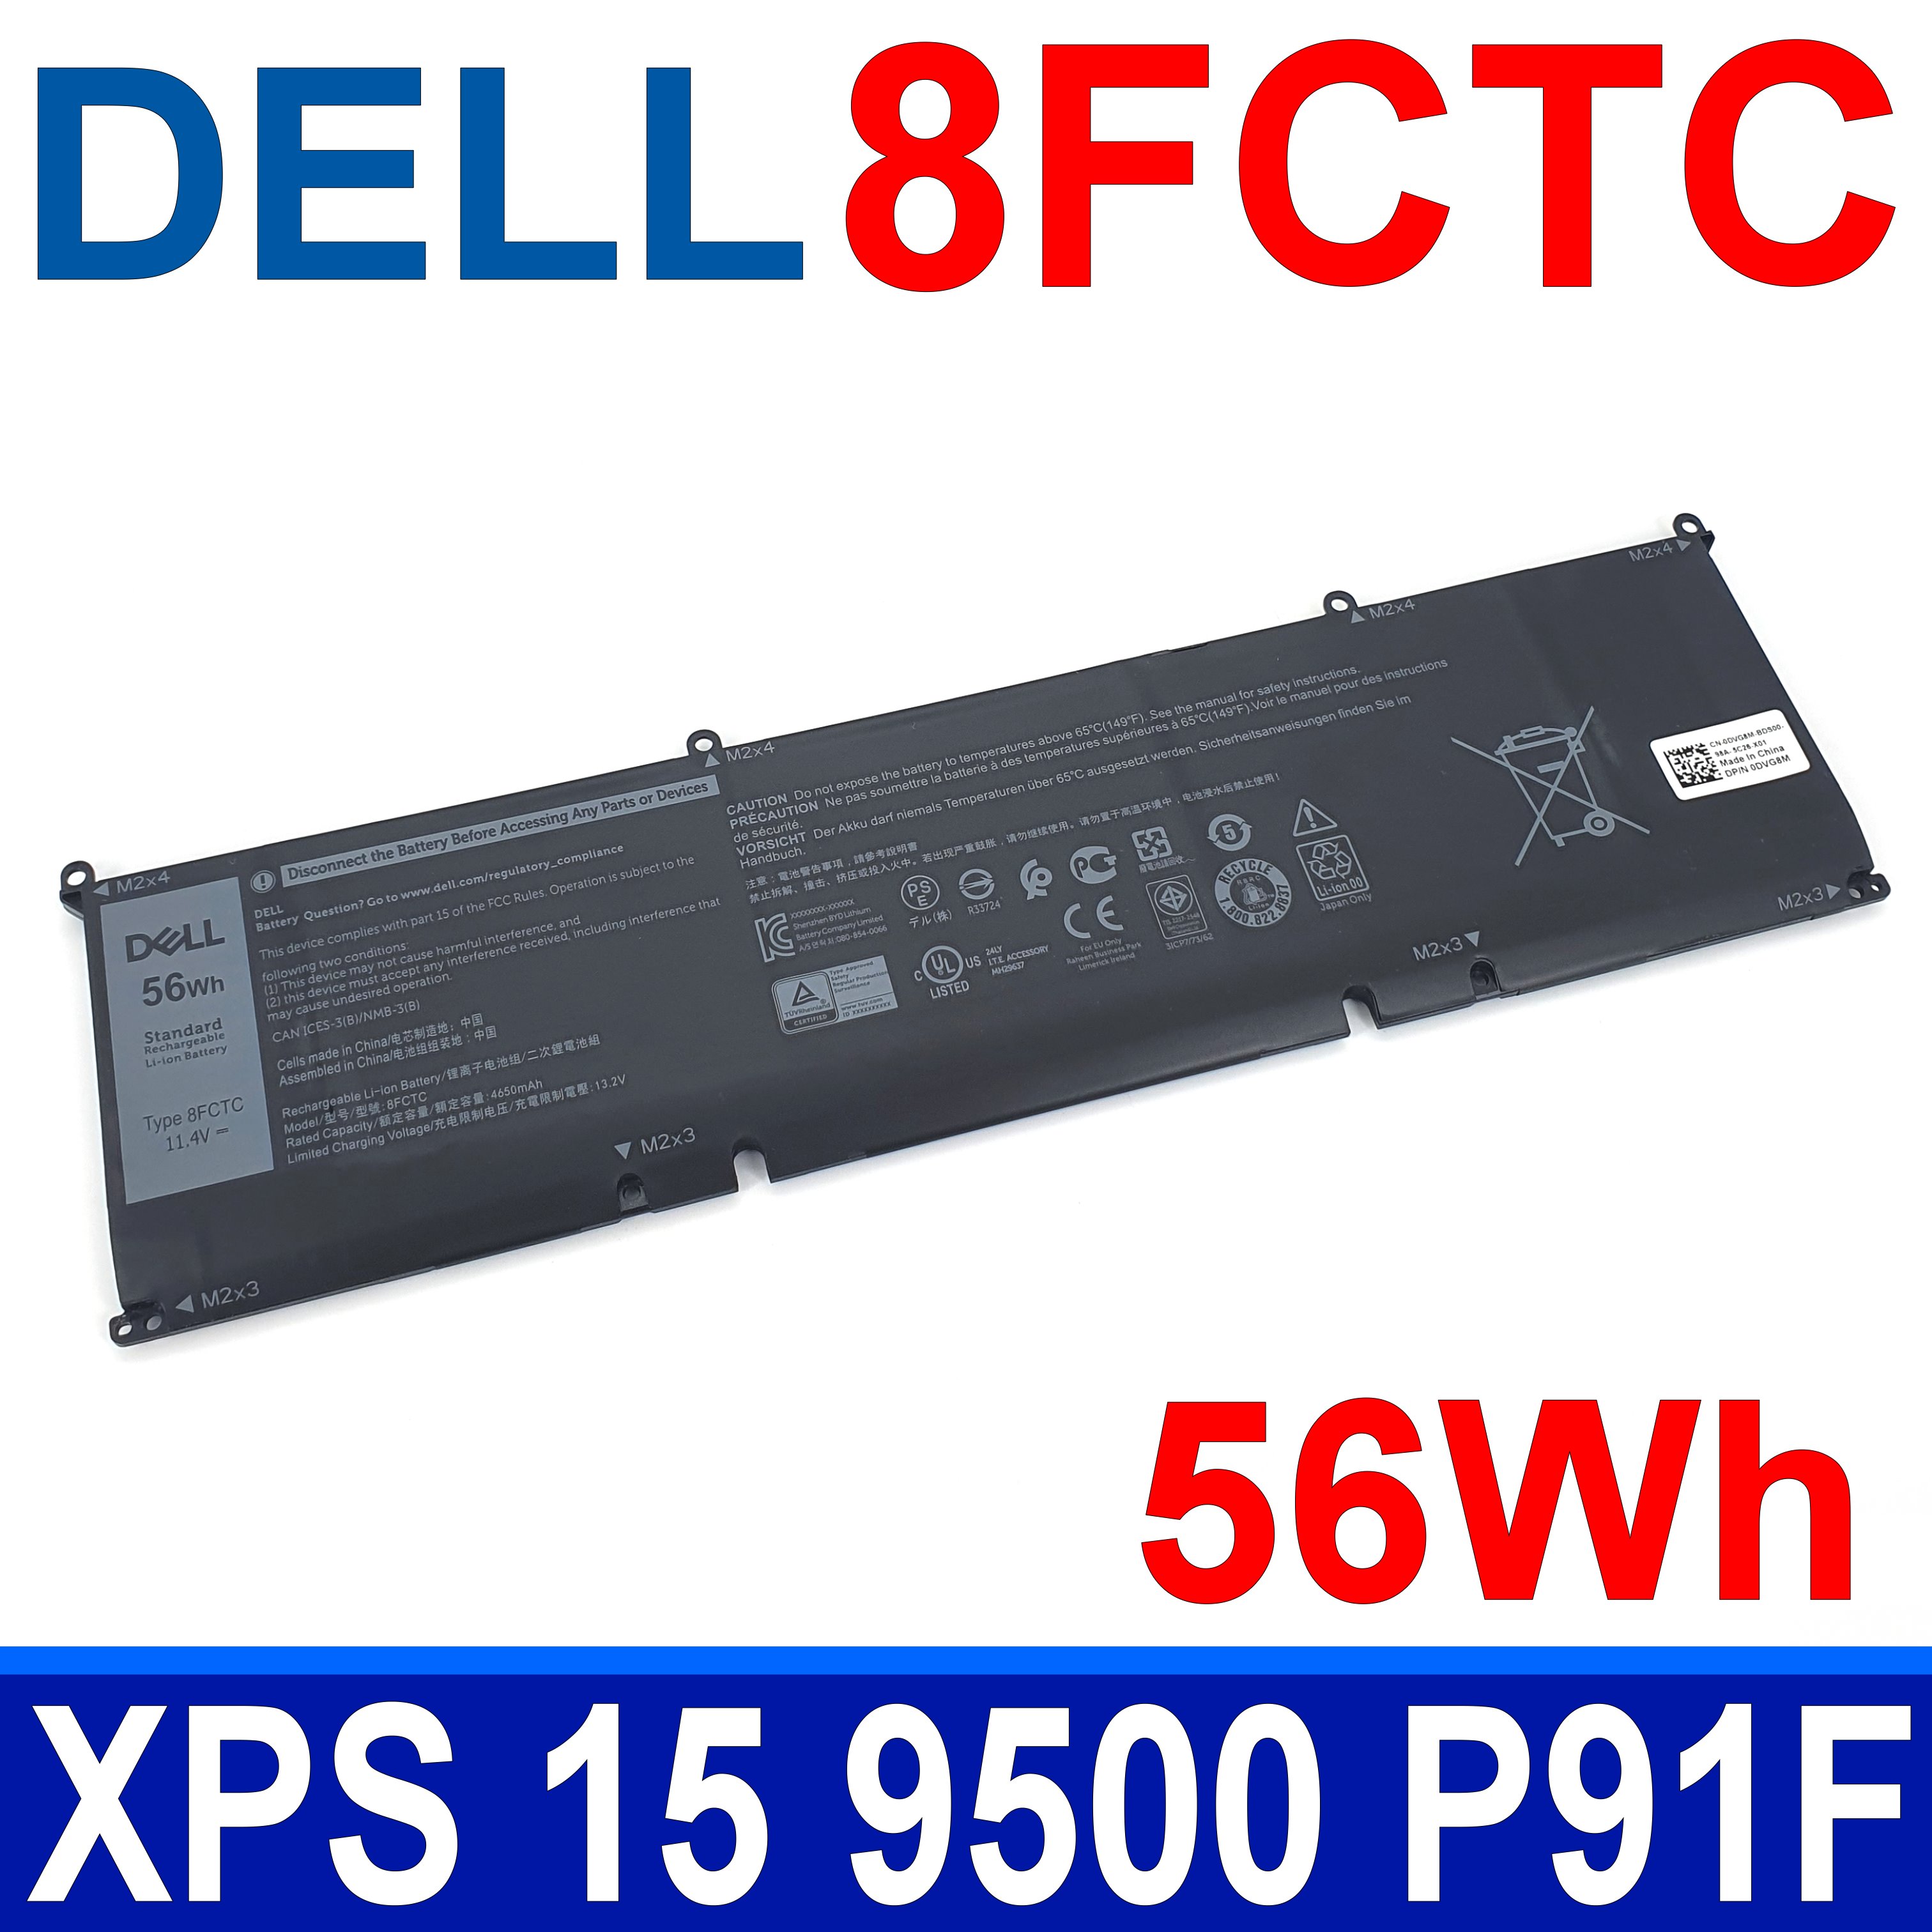 戴爾 DELL 8FCTC 56Wh 3芯 原廠電池 DVG8M P8P1P 69KF2(86Wh) DELL G7 15 7500 P100F DELL XPS 15 9500 P91F